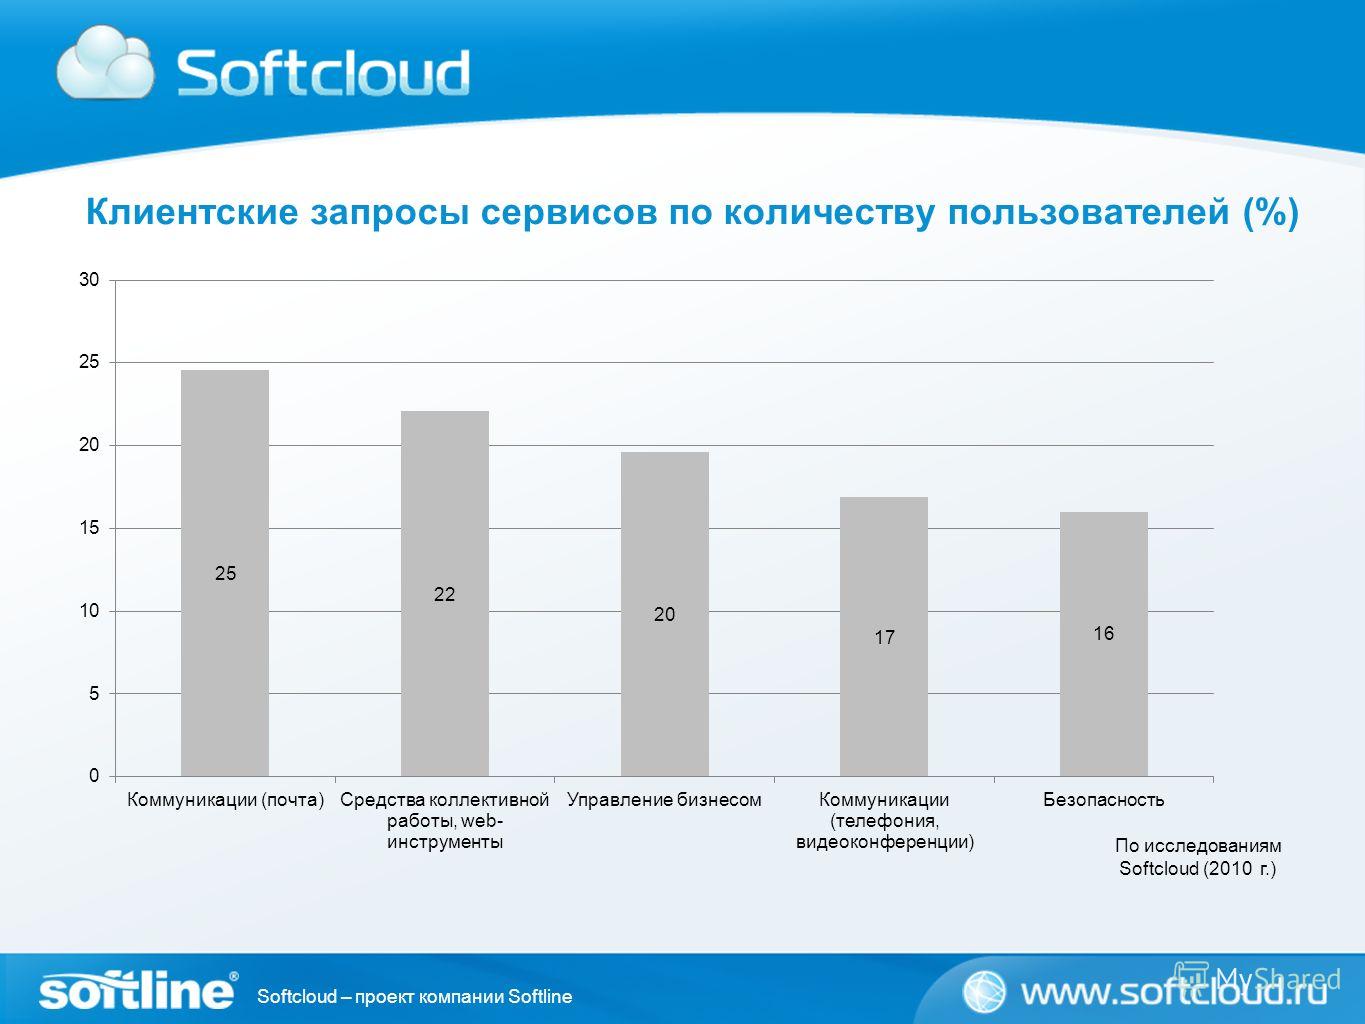 Softcloud – проект компании Softline Клиентские запросы сервисов по количеству пользователей (%) По исследованиям Softcloud (2010 г.)